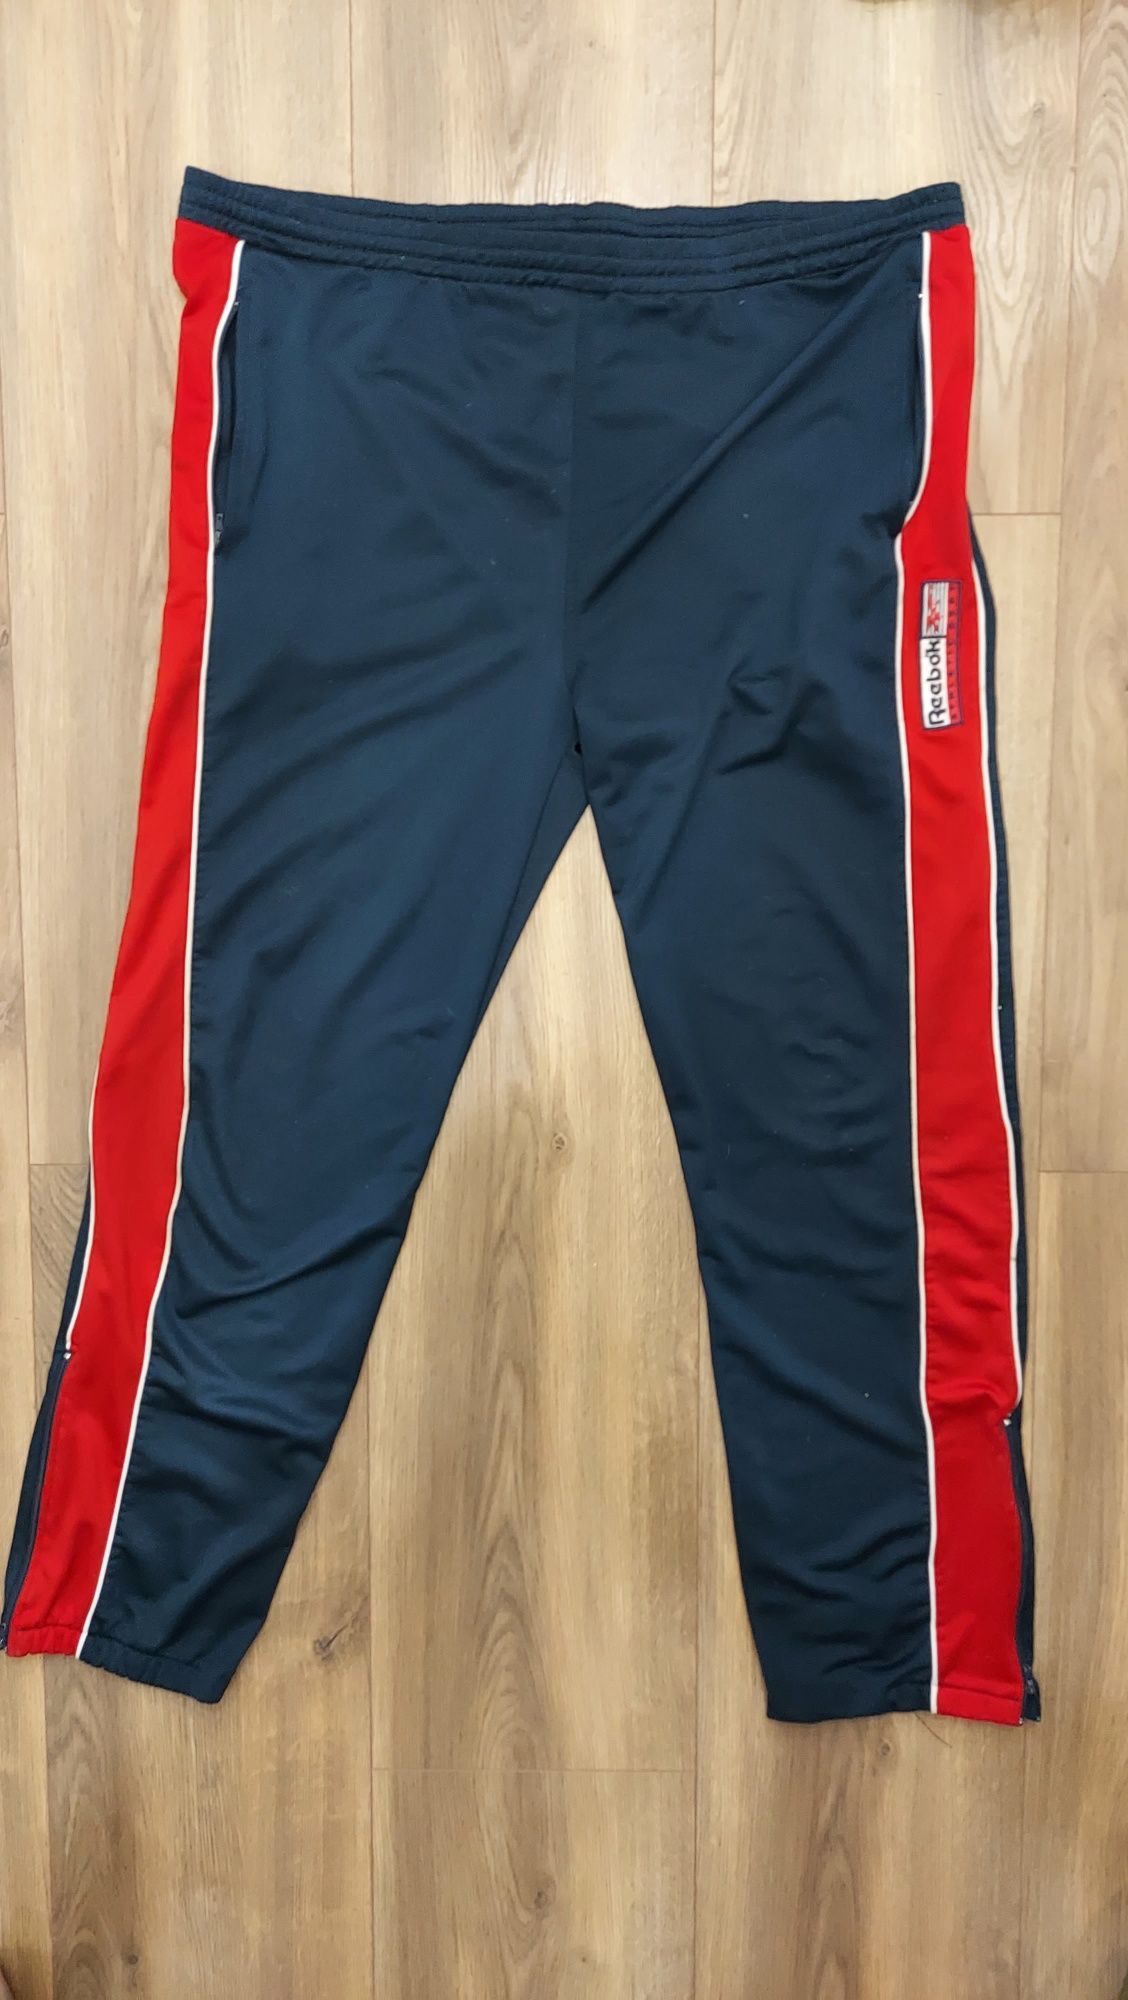 Spodnie dresowe Reebok, retro vintage sportowe dresy r. L/xl